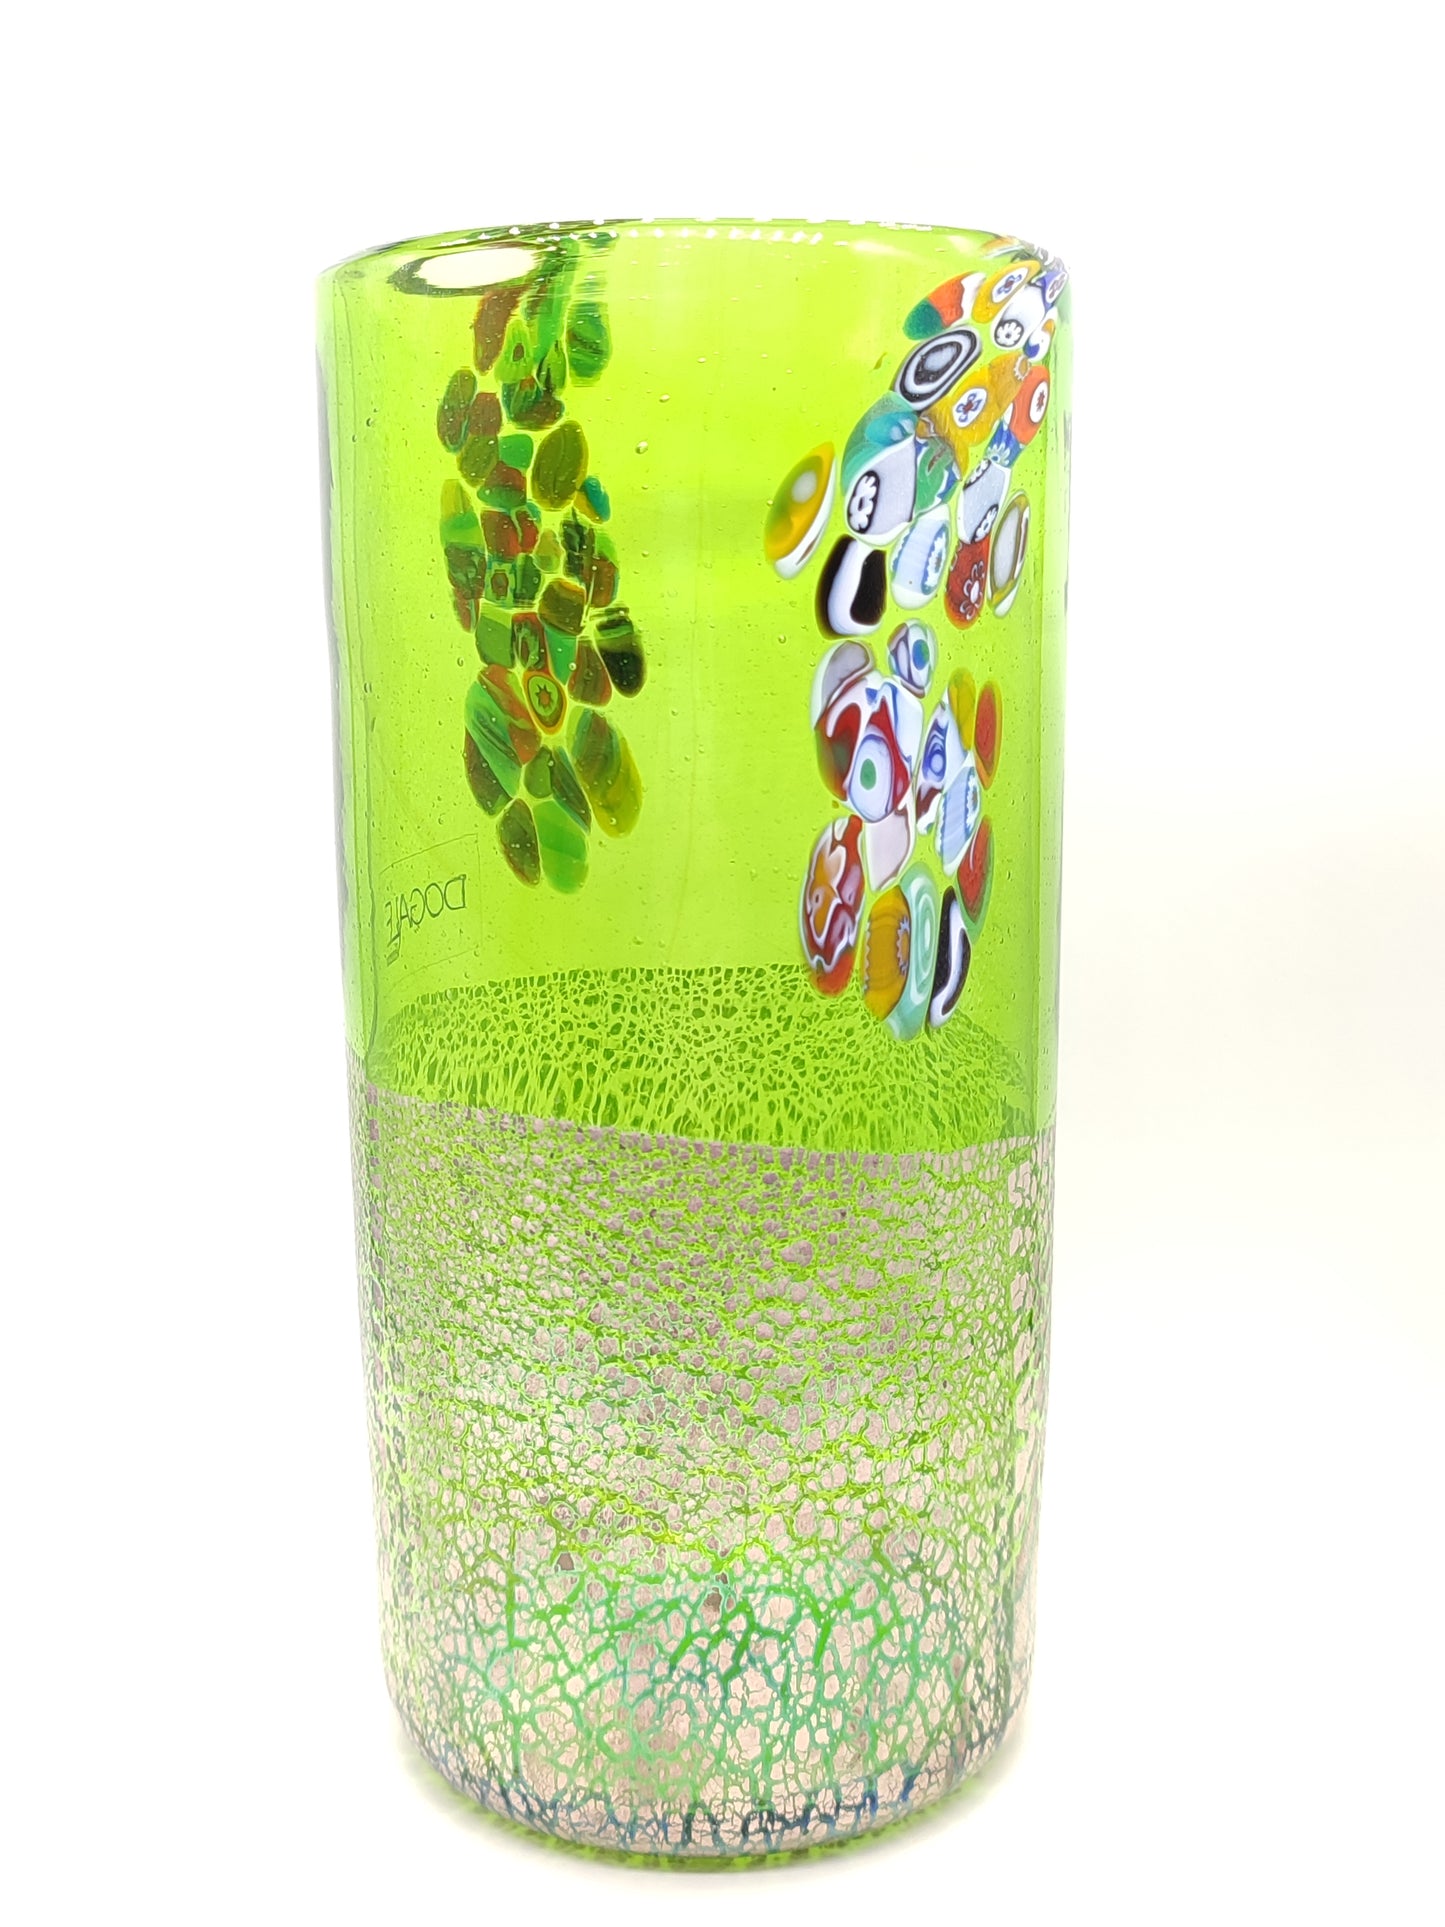 Dogale Rialto vase in Murano glass D.11cm